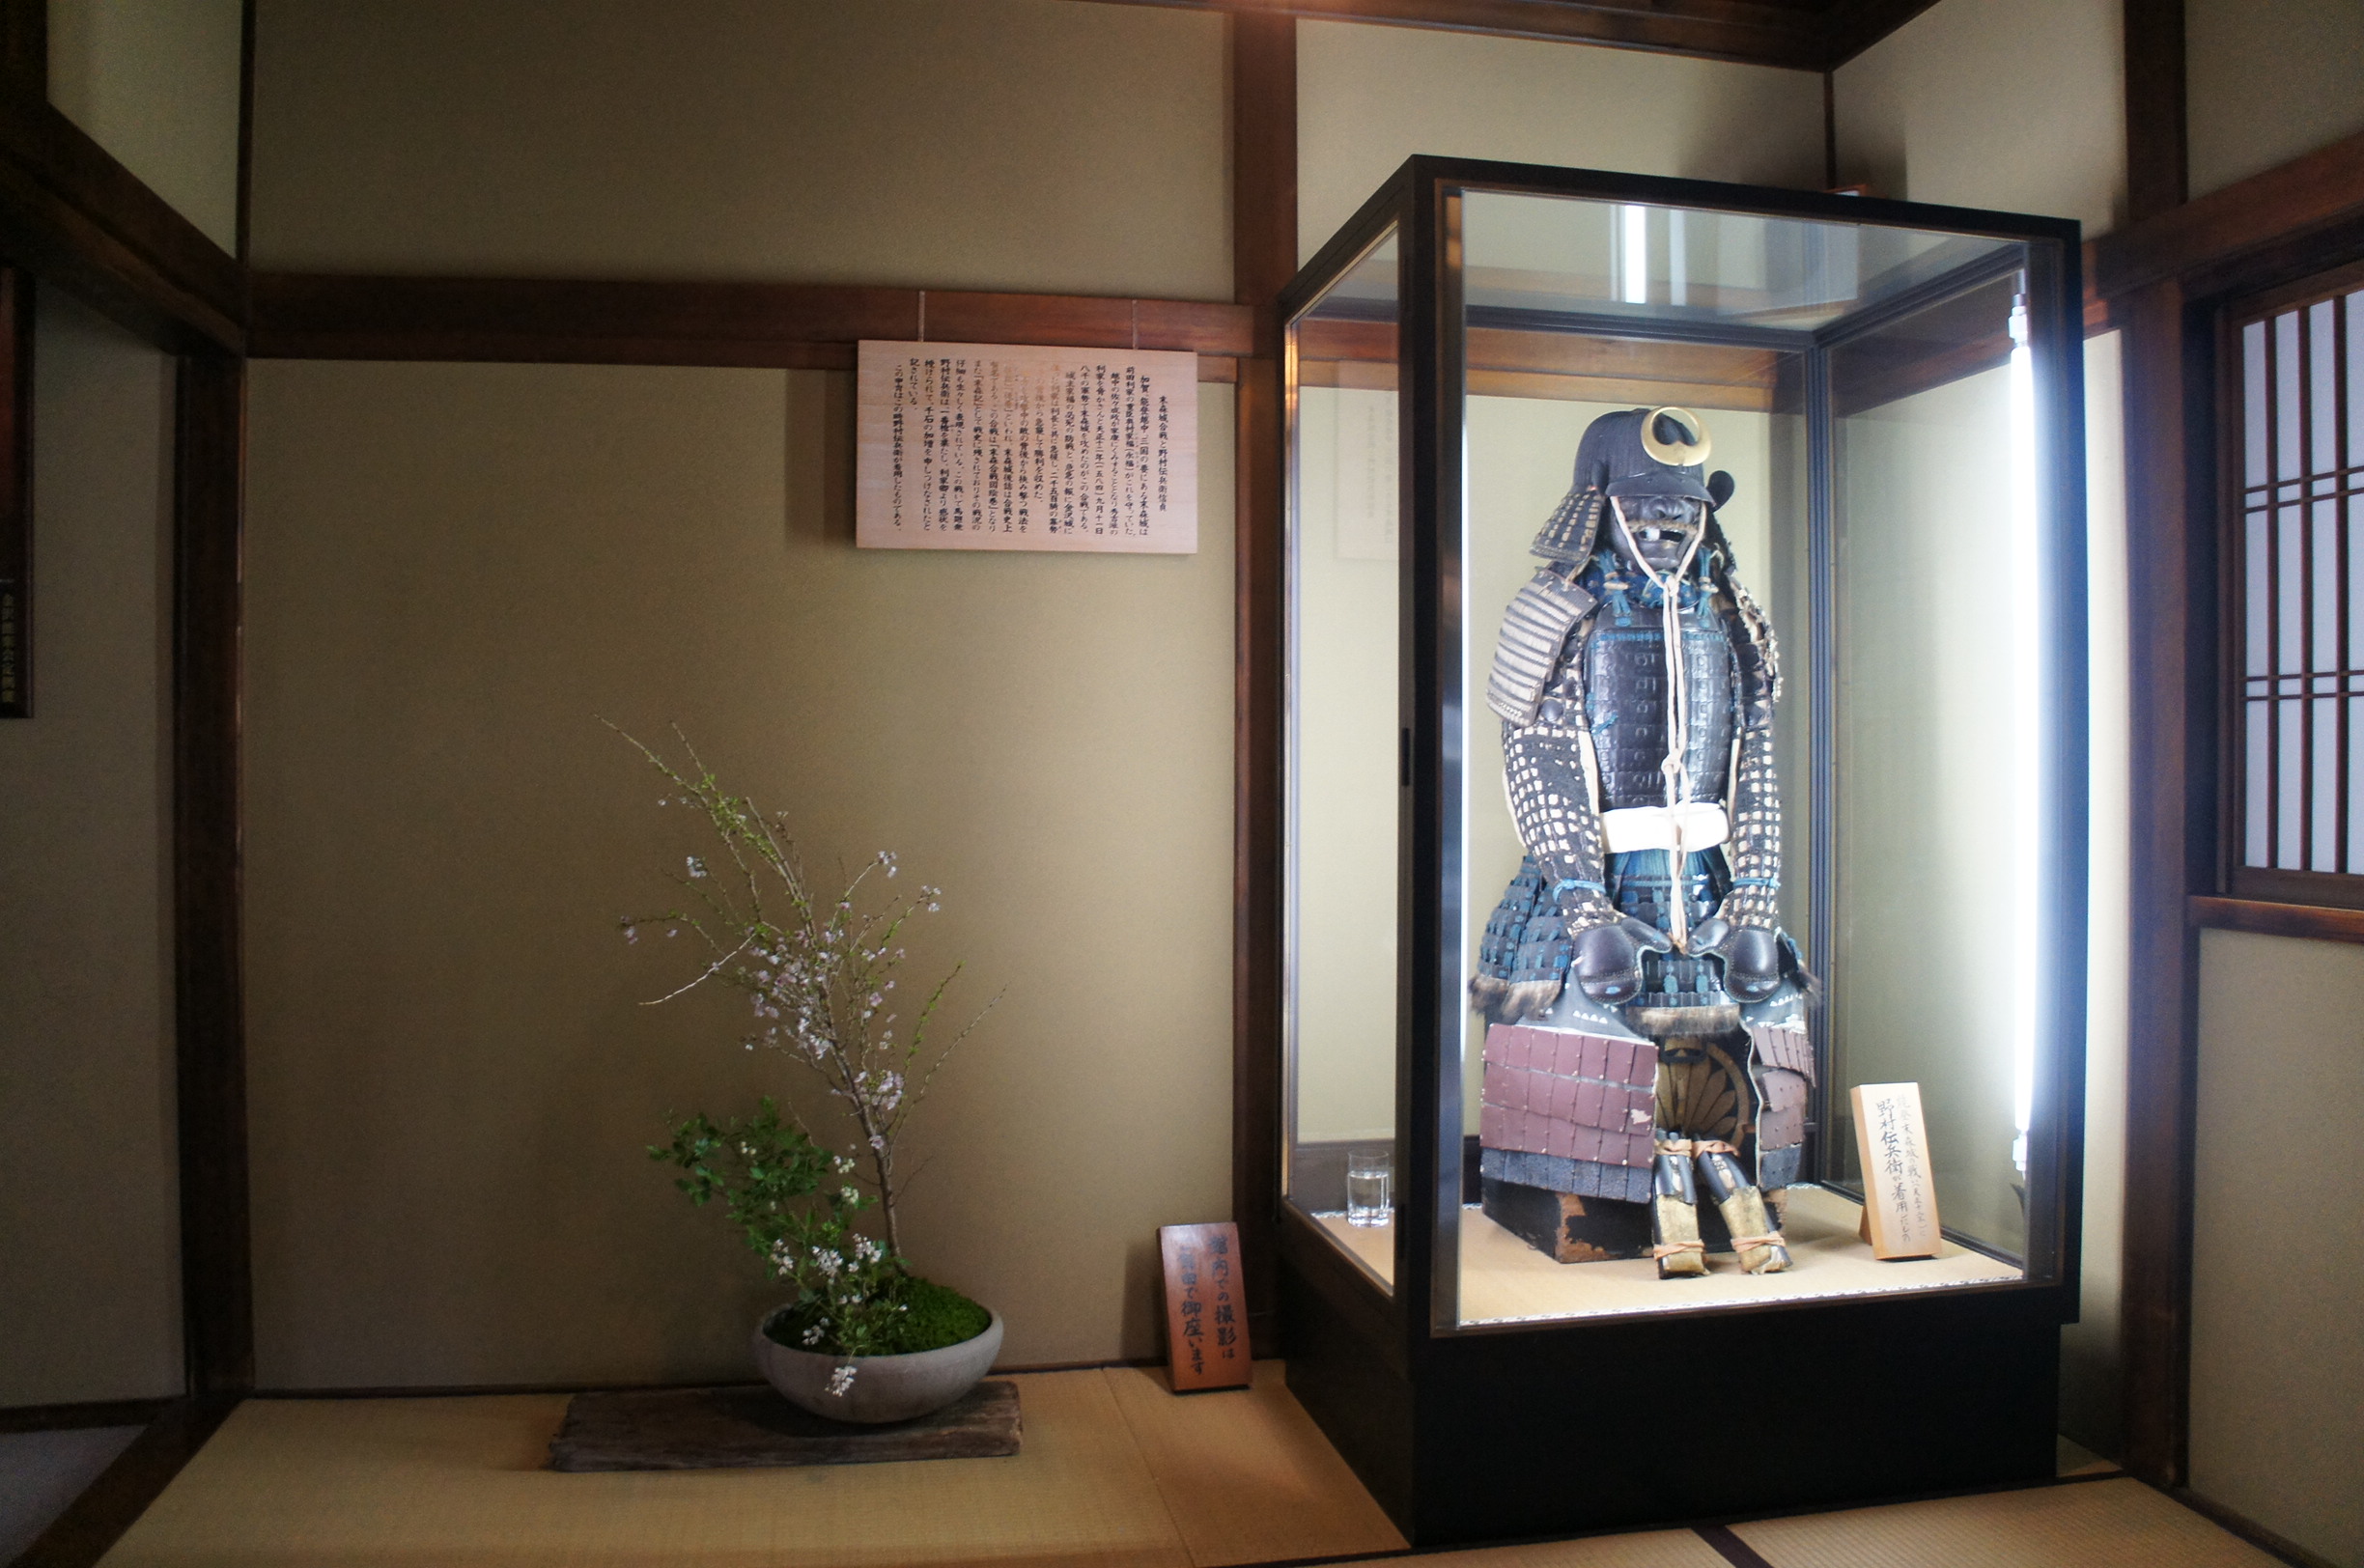 Samurai armour in the entryway.